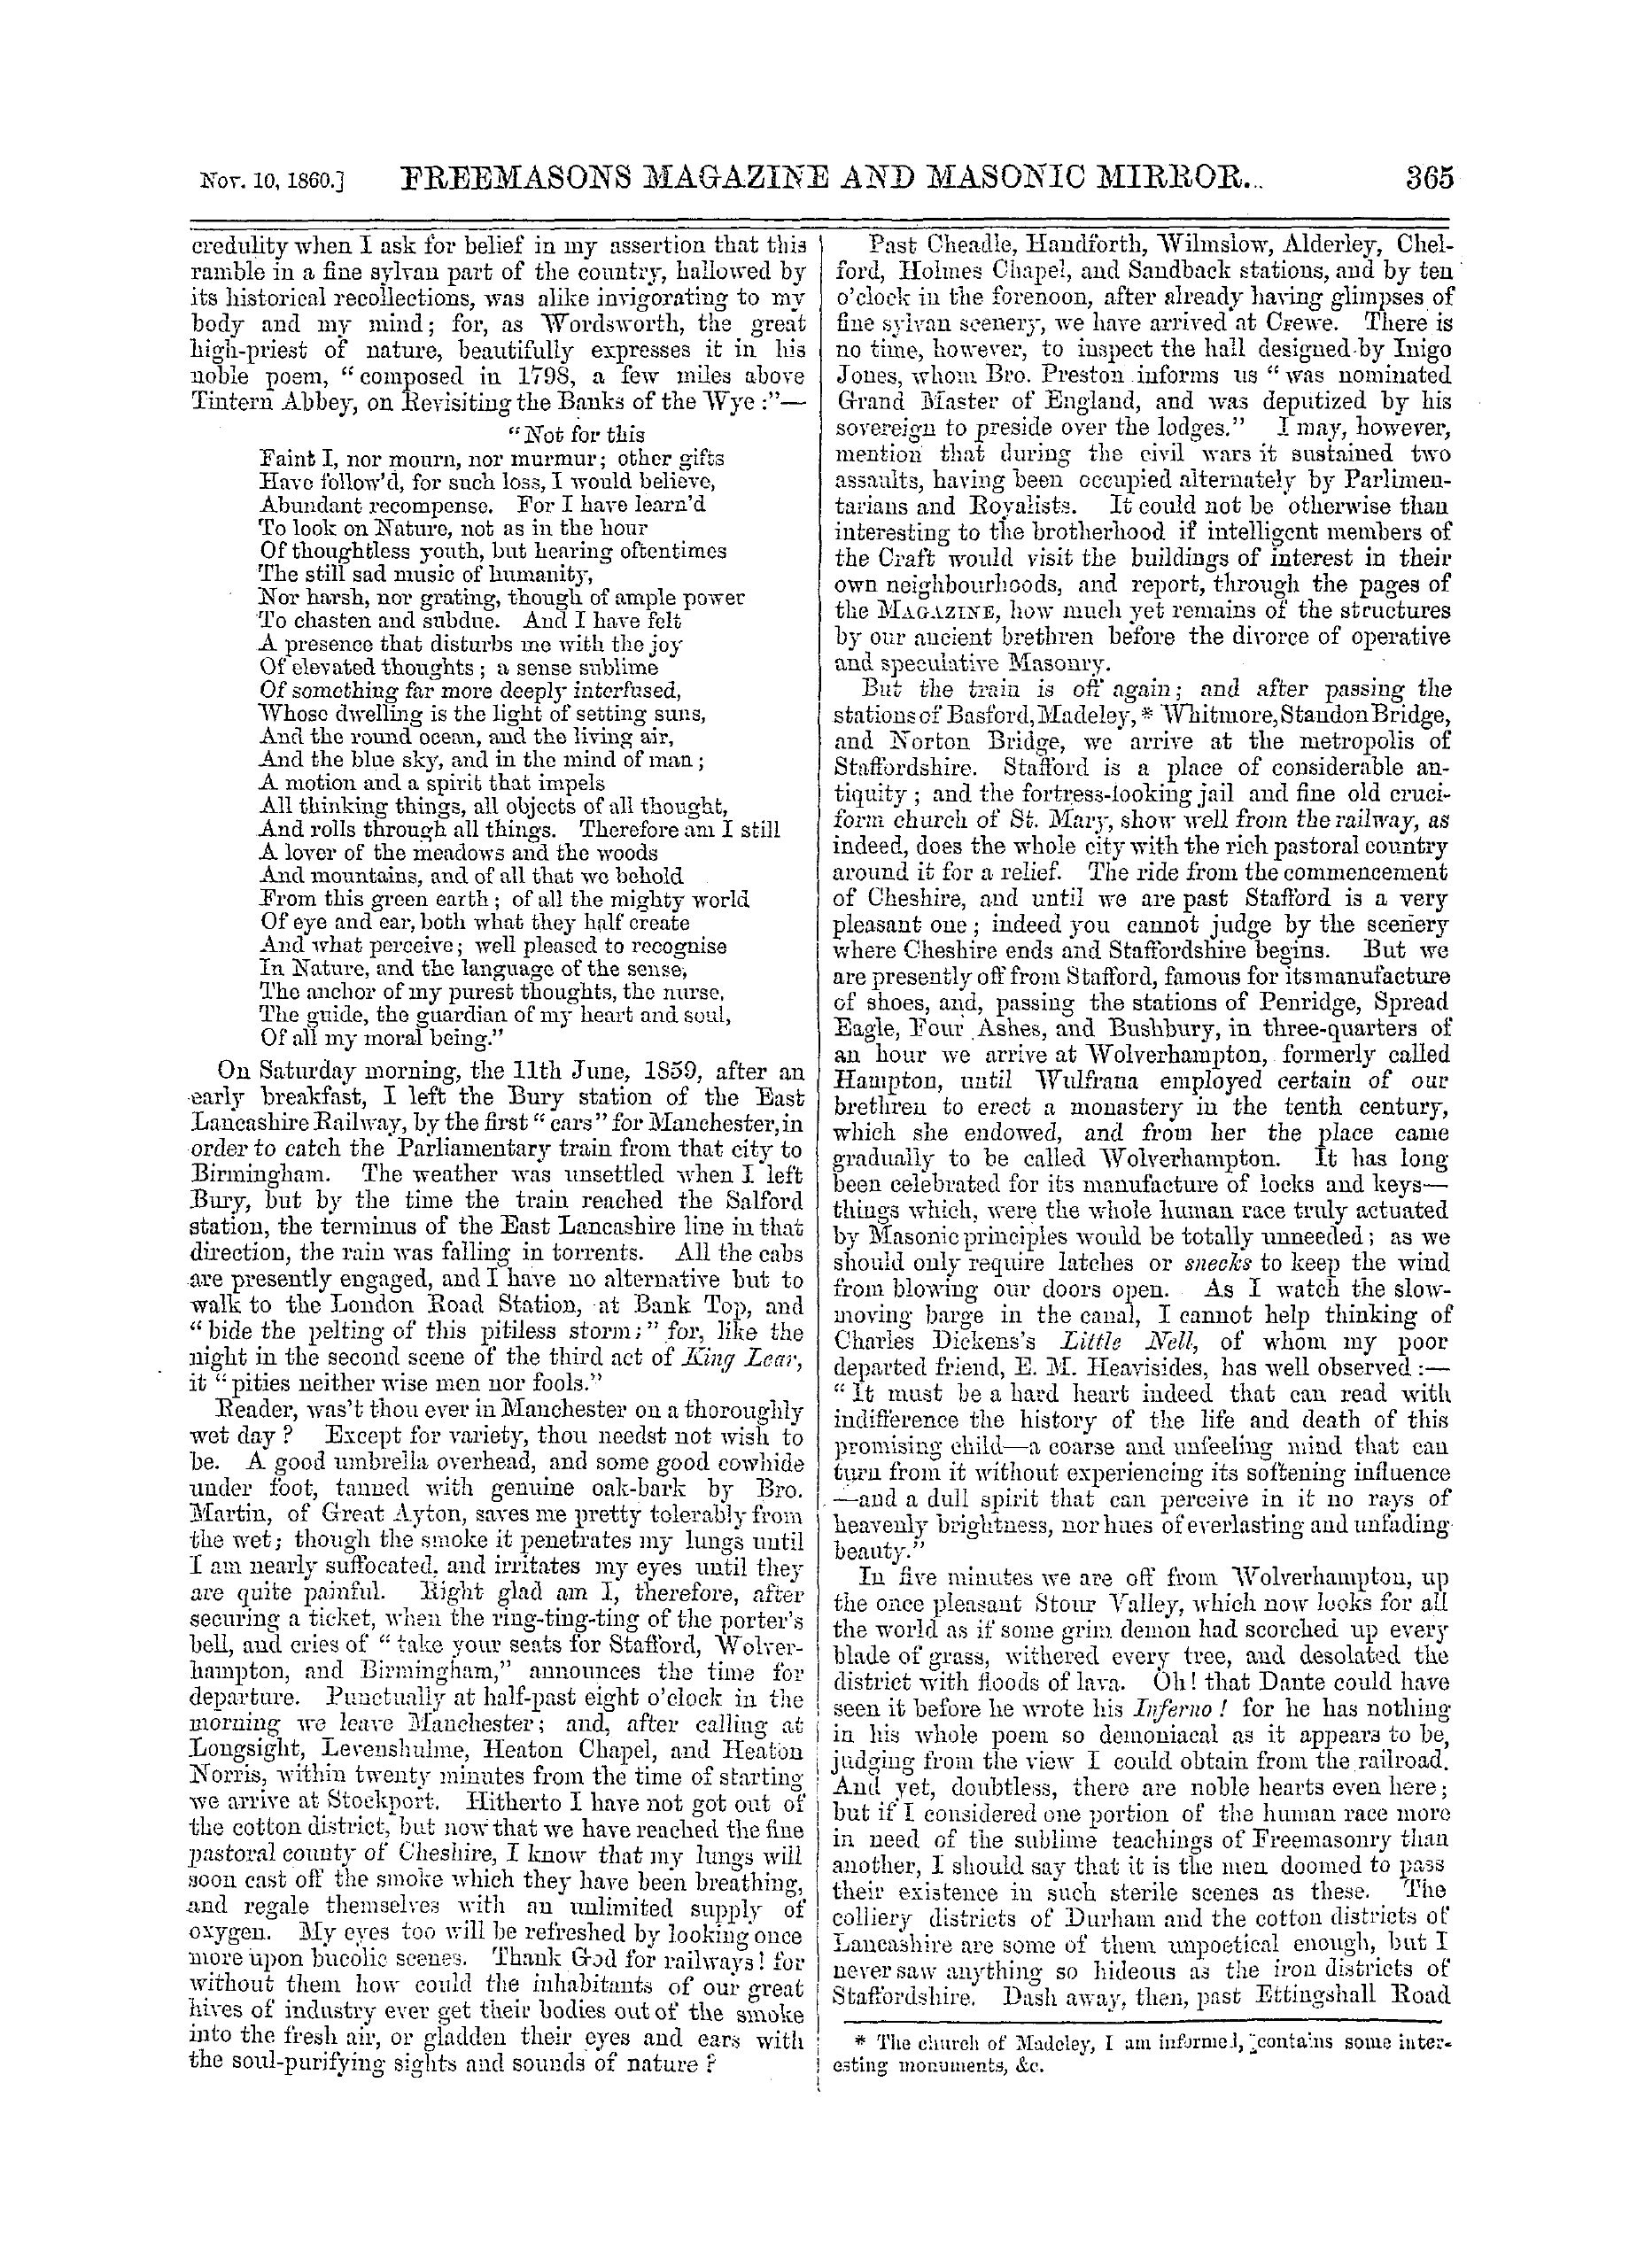 The Freemasons' Monthly Magazine: 1860-11-10: 5